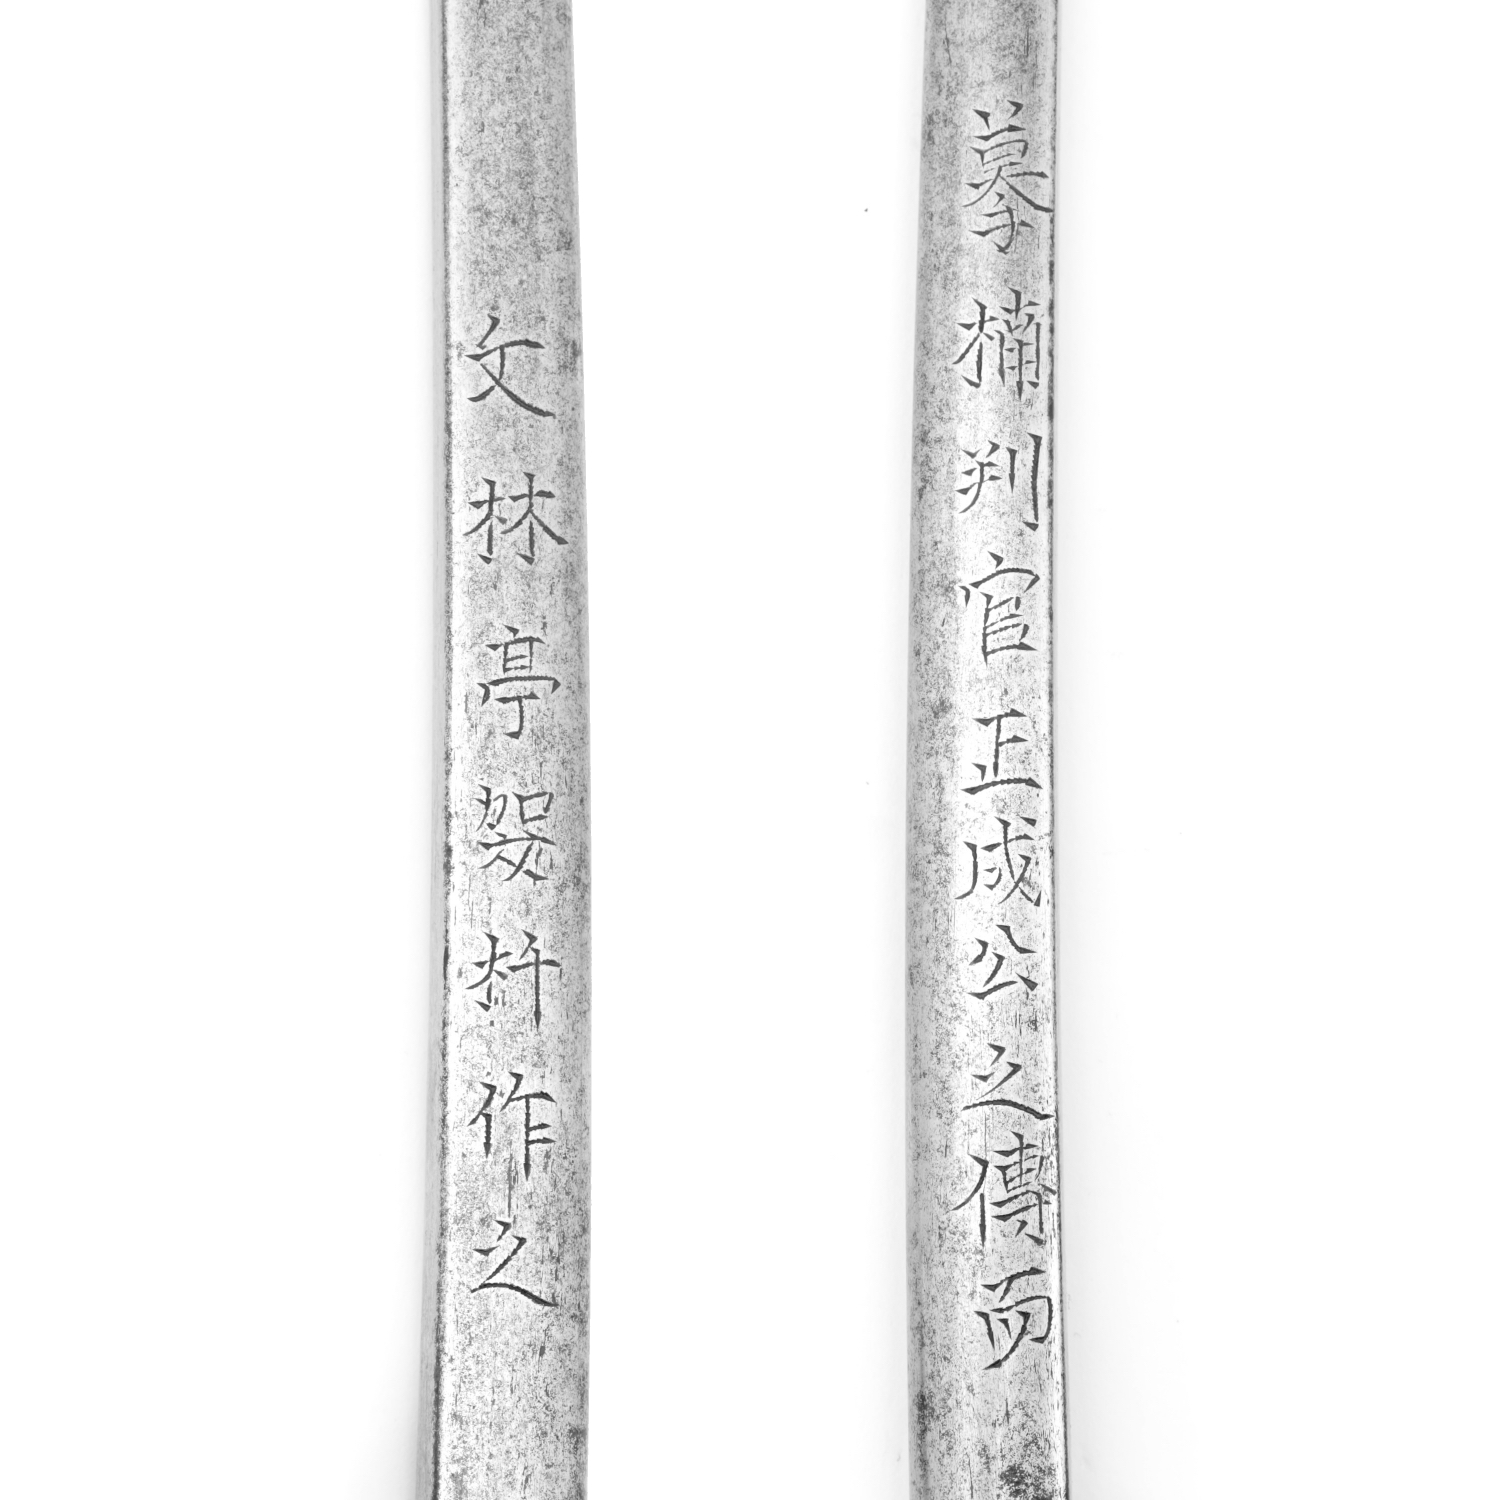 Hachiwari rod markings